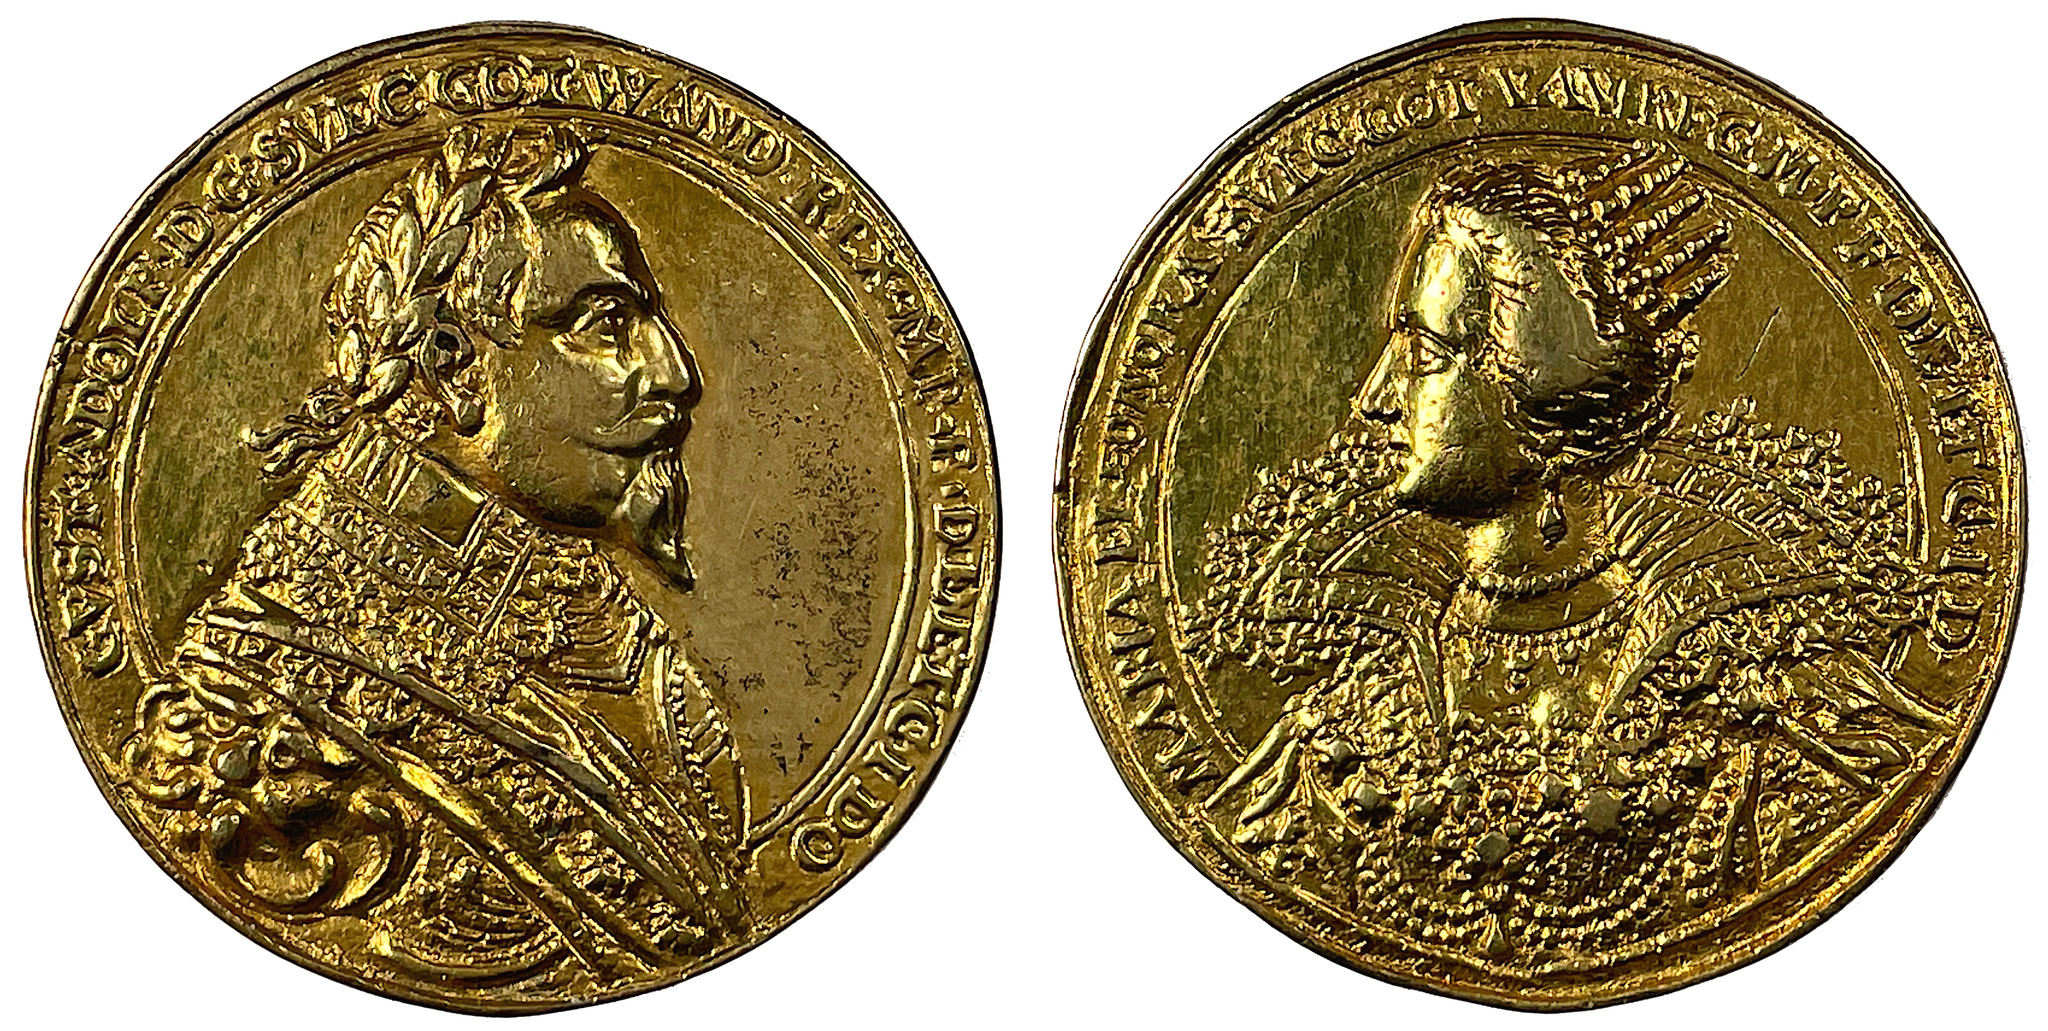 Minnespenning över konungaparet Gustav II Adolf och Maria Eleonora 1620-talet - Ex. Crona 1937:175